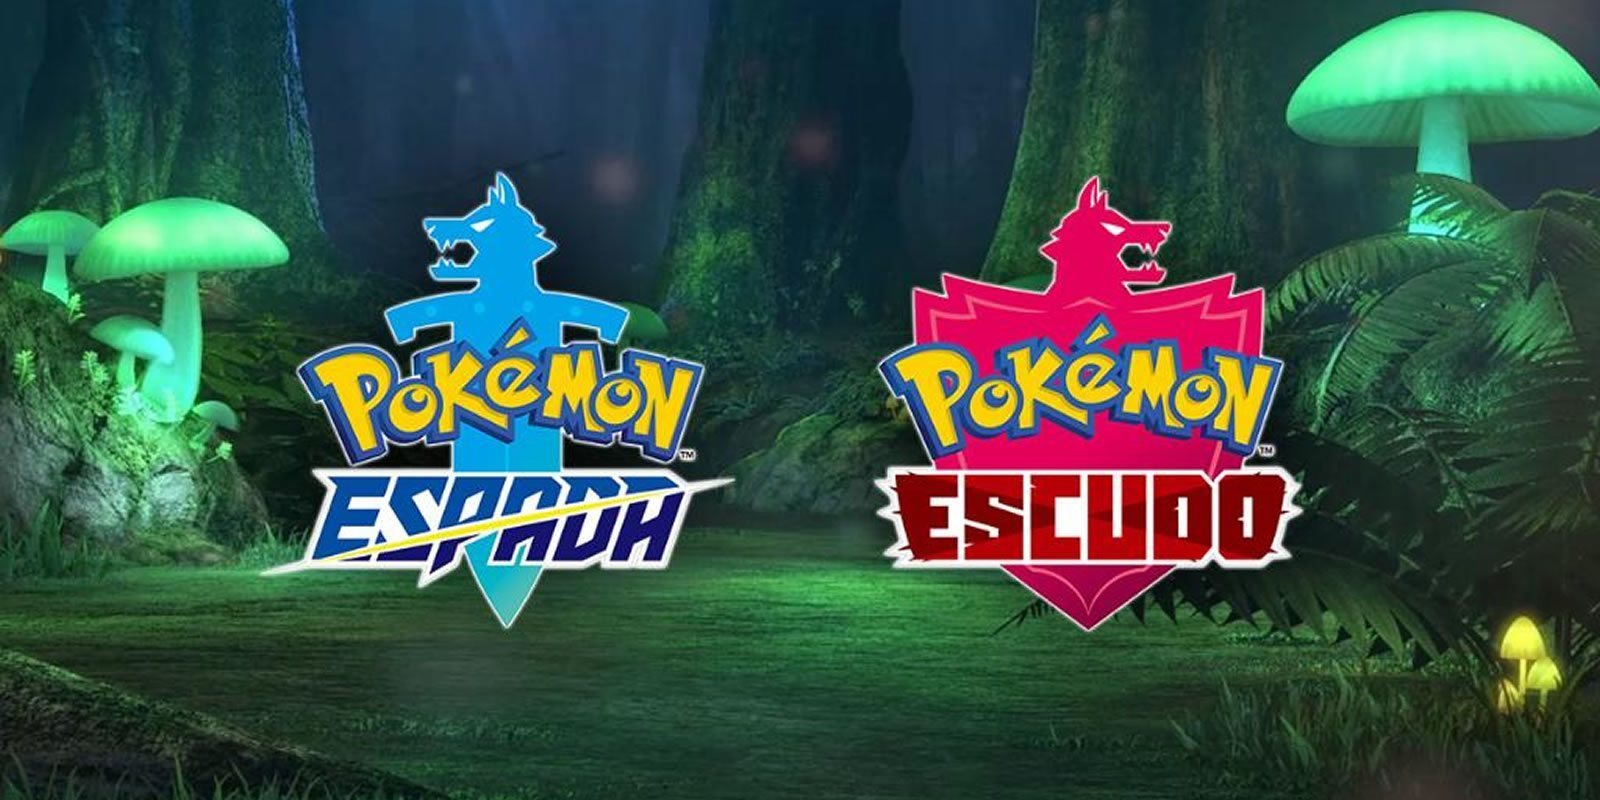 Habrá 24 horas de retransmisión de 'Pokémon Espada' y 'Pokémon Escudo' para el próximo viernes